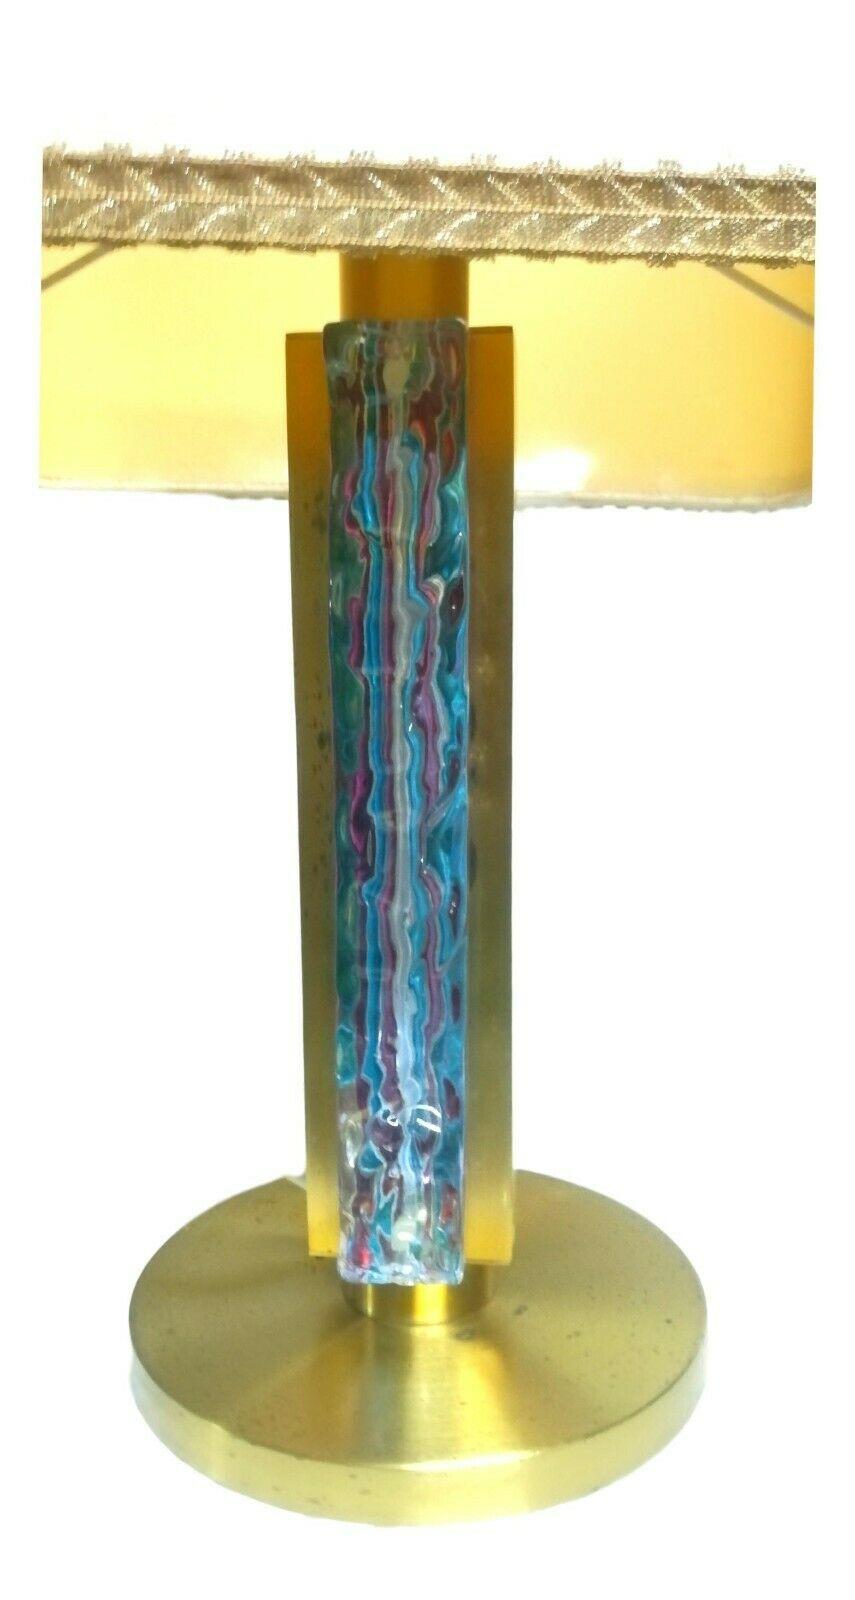 Lampe de table réalisée par esperia , dessinée par angelo brottomurano travaillée et multicolore dans des tons de bleu

Il mesure environ 60 cm de hauteur totale, le chapeau 36x36 cm

Très bon état, comme indiqué sur les photos, verre intact et